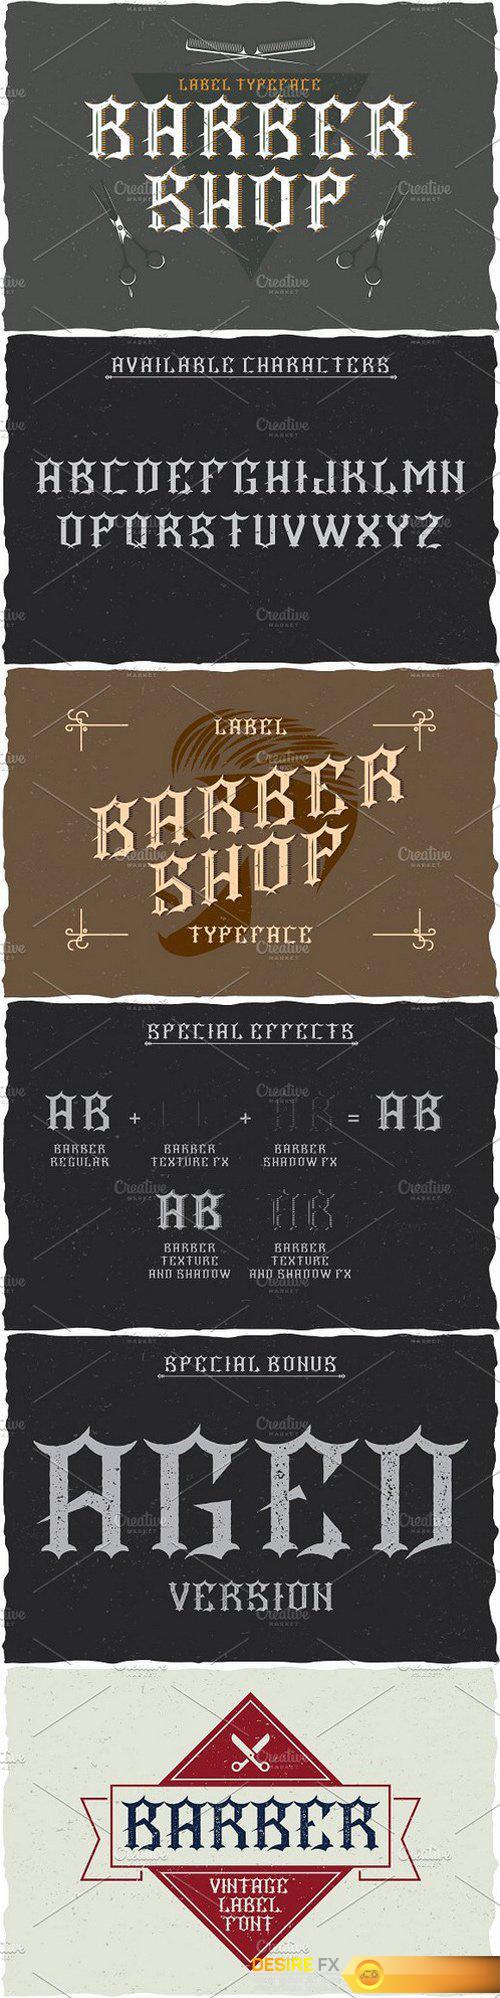 CM - Barber Label Typeface 1461874